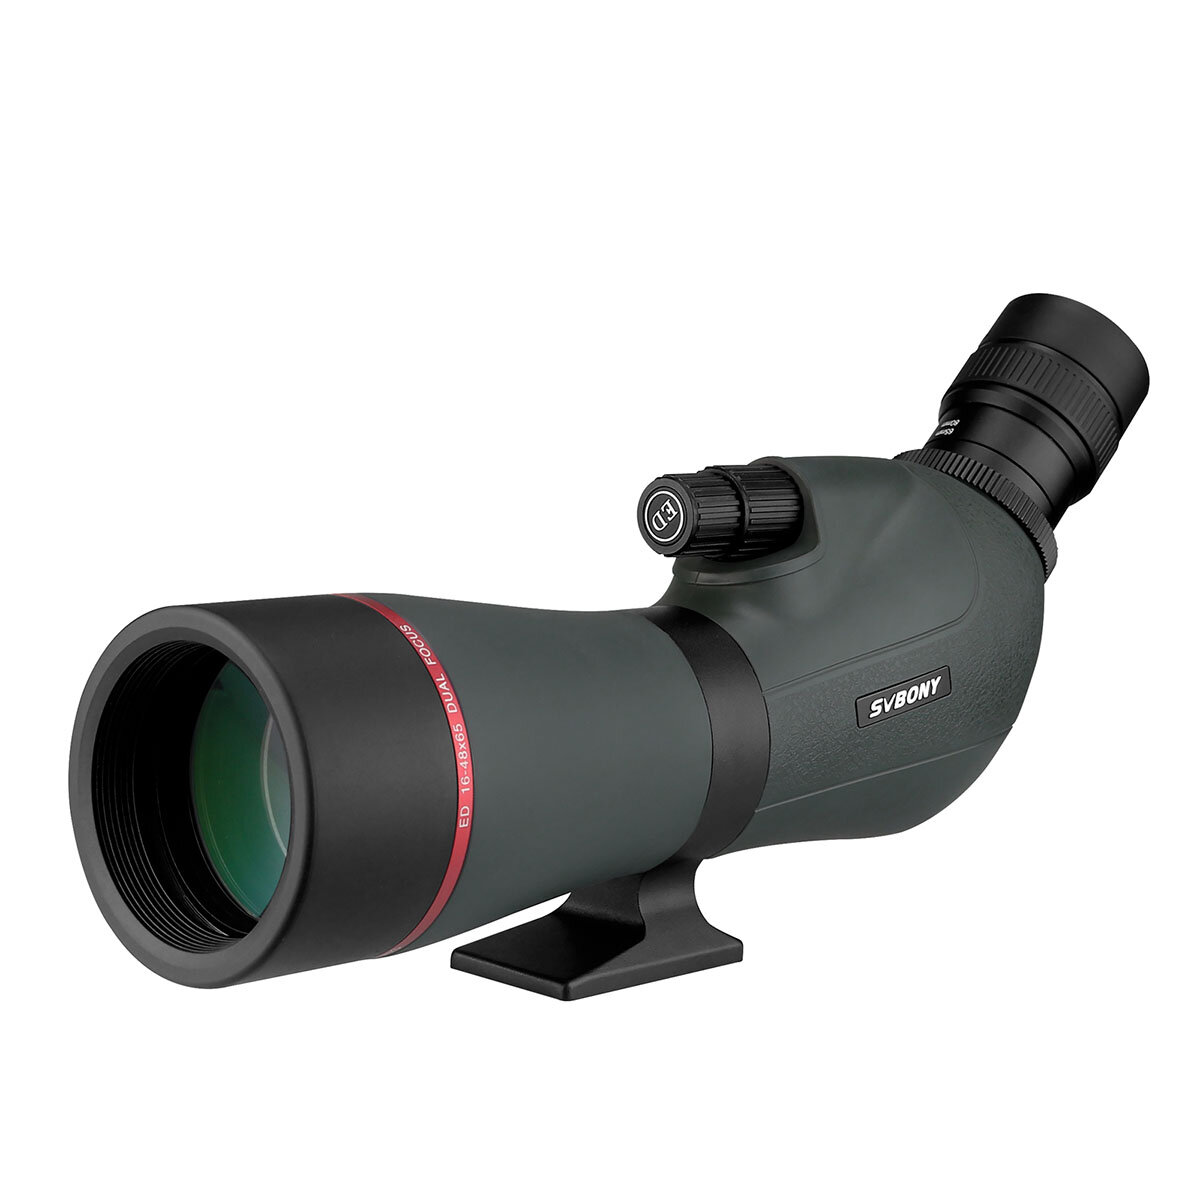 Reflektorový dalekohľad SVBONY SV406P 16-48x65 s dvojitou rýchlosťou zaostrovania ED, HD monokulárny, vodotesný a proti hmle pre vonkajšie fotenie, kemping a lov.